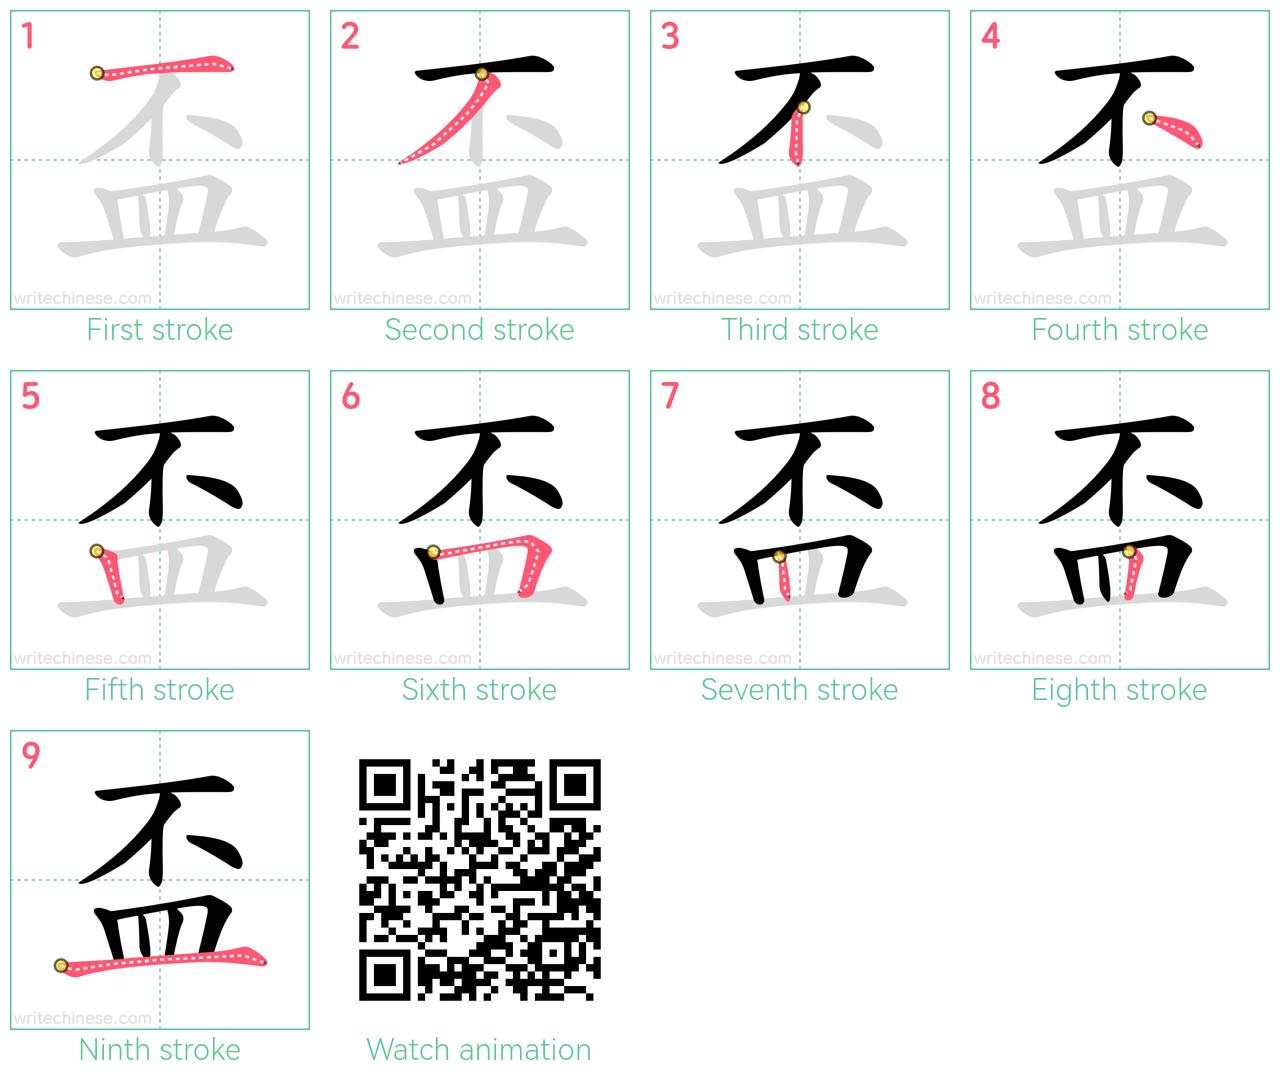 盃 step-by-step stroke order diagrams